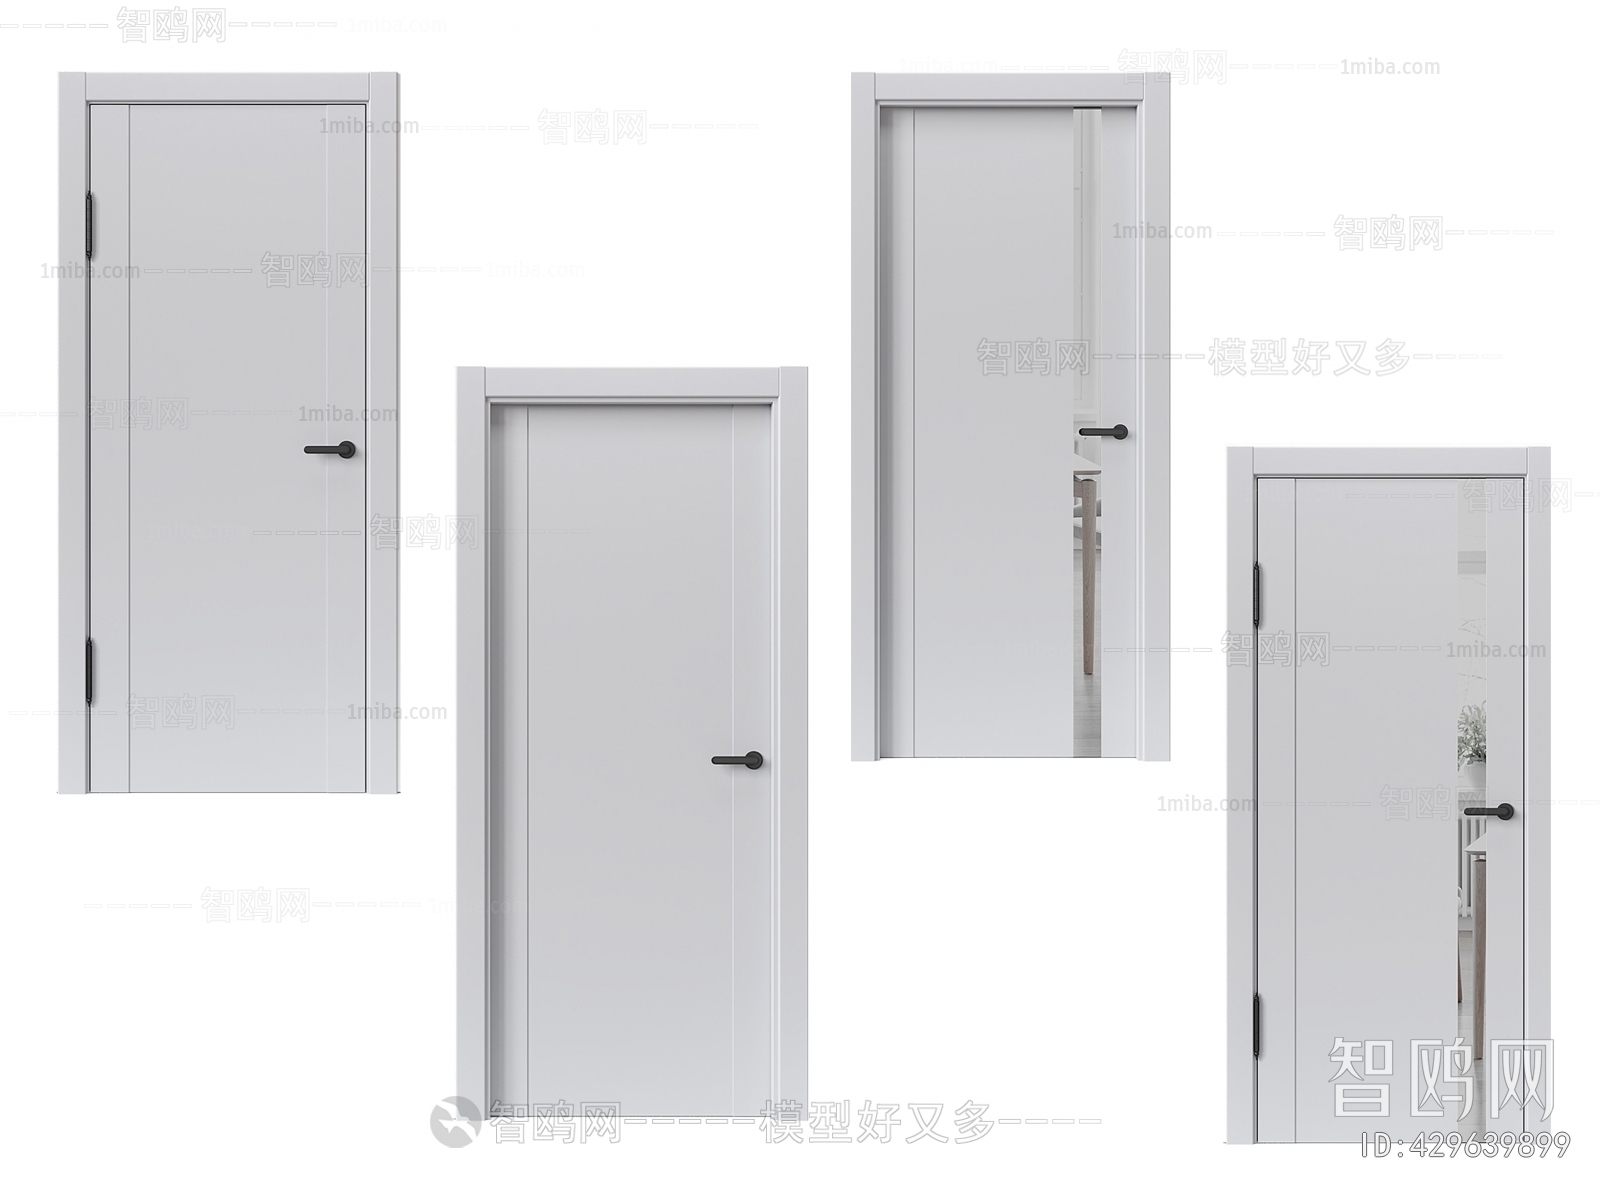 Modern Single Door